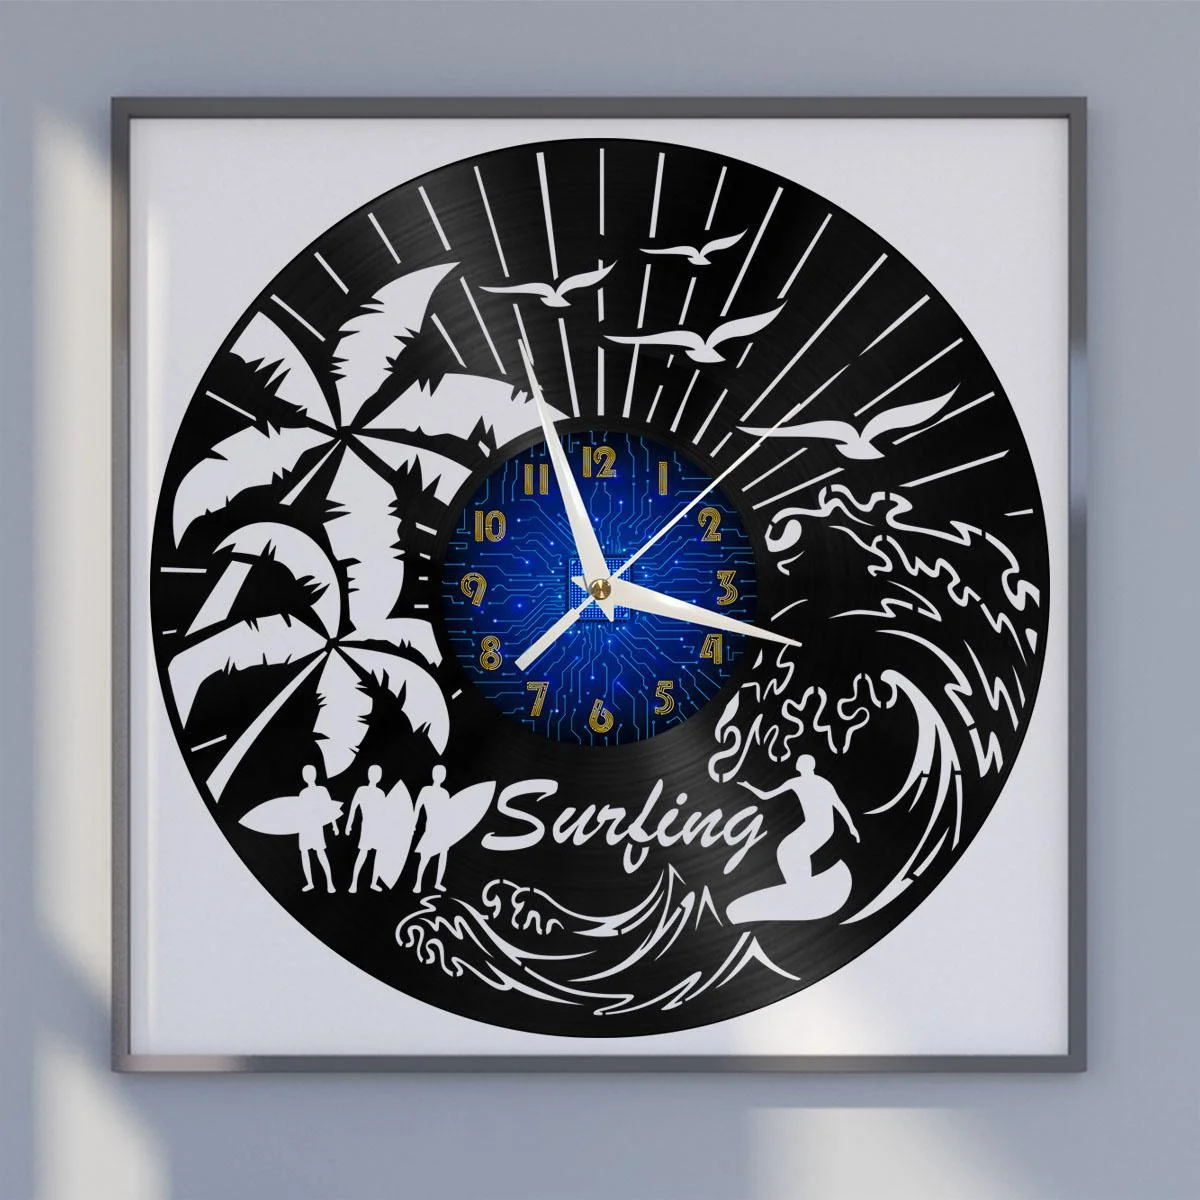 

Surfing in Hawaii Vinyl Wall Clock, Vinyl Record LED Clock Wall Art Black 12 Inch for Living Room Bedroom